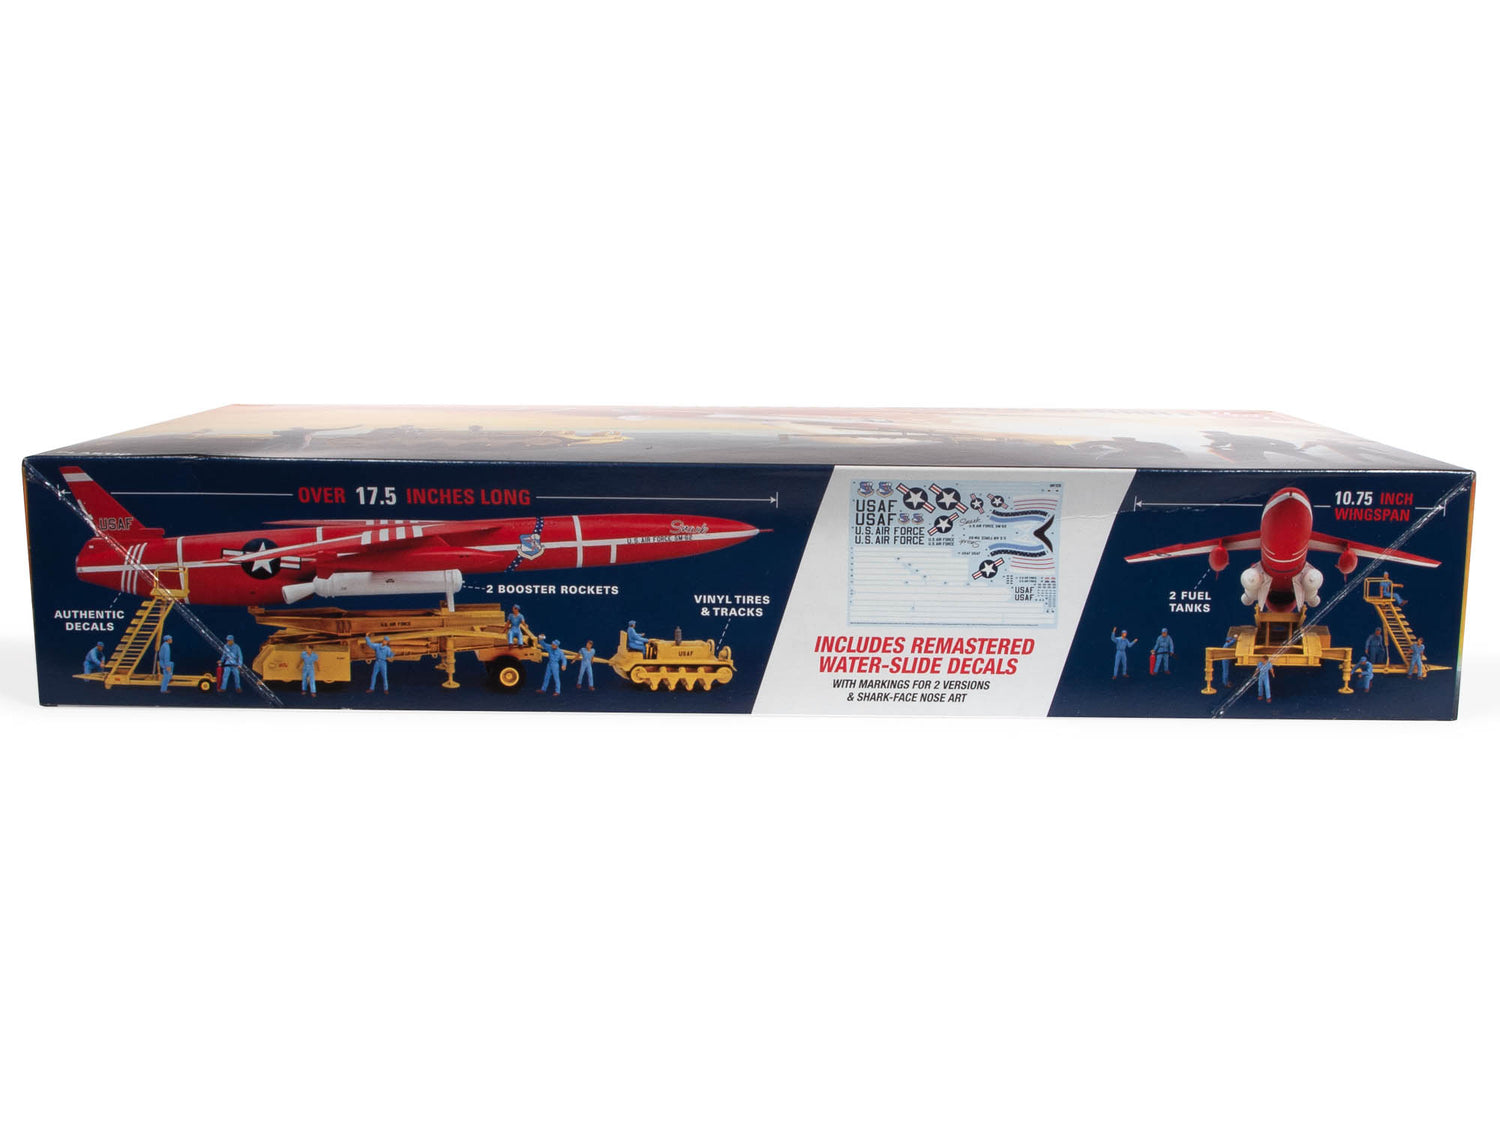 AMT Snark Missile 1:48 Scale Model Kit